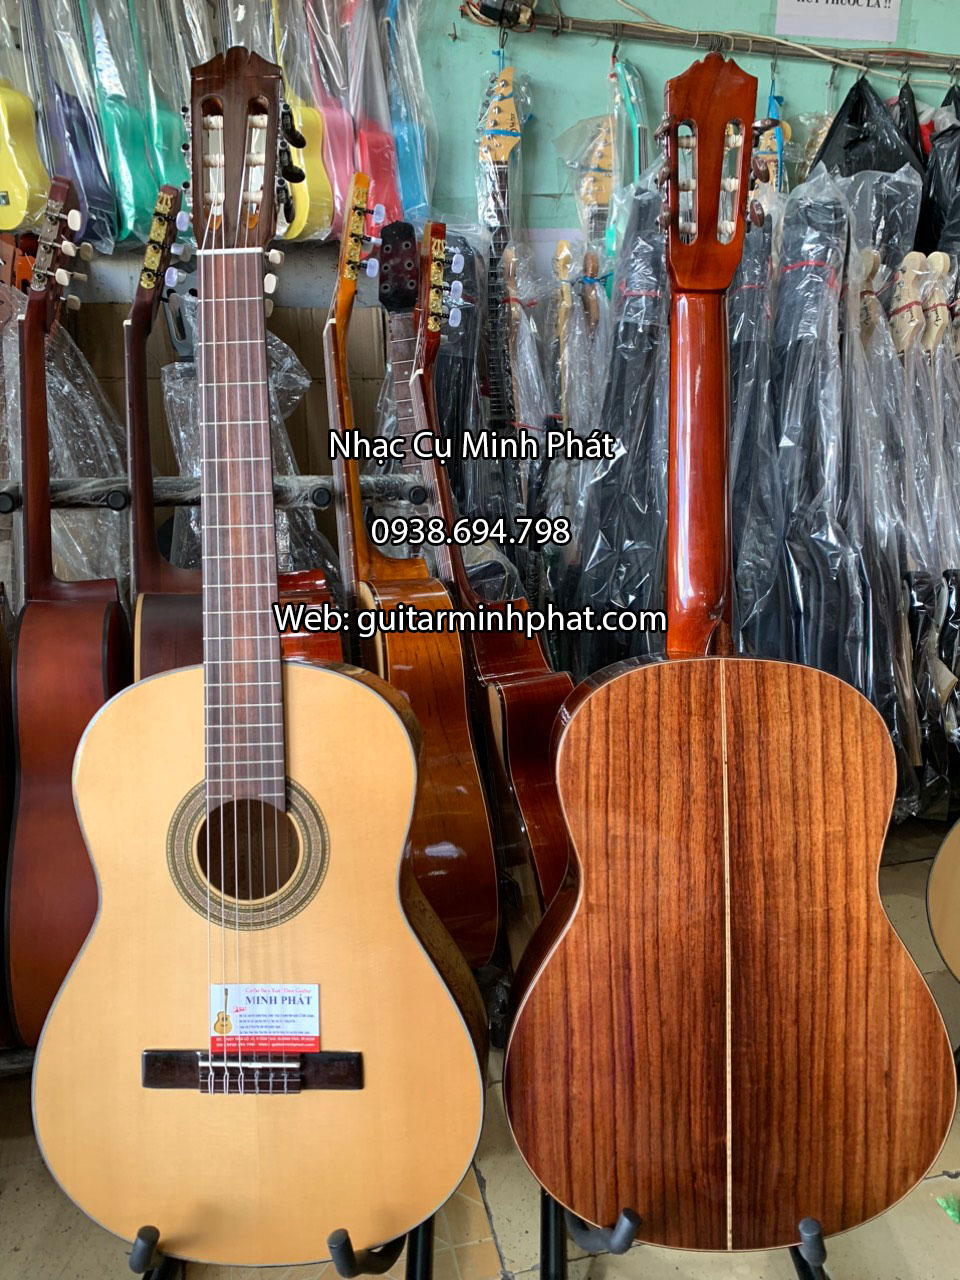 Bán đàn guitar classic giá rẻ uy tín chất lượng tại quận Bình Tân